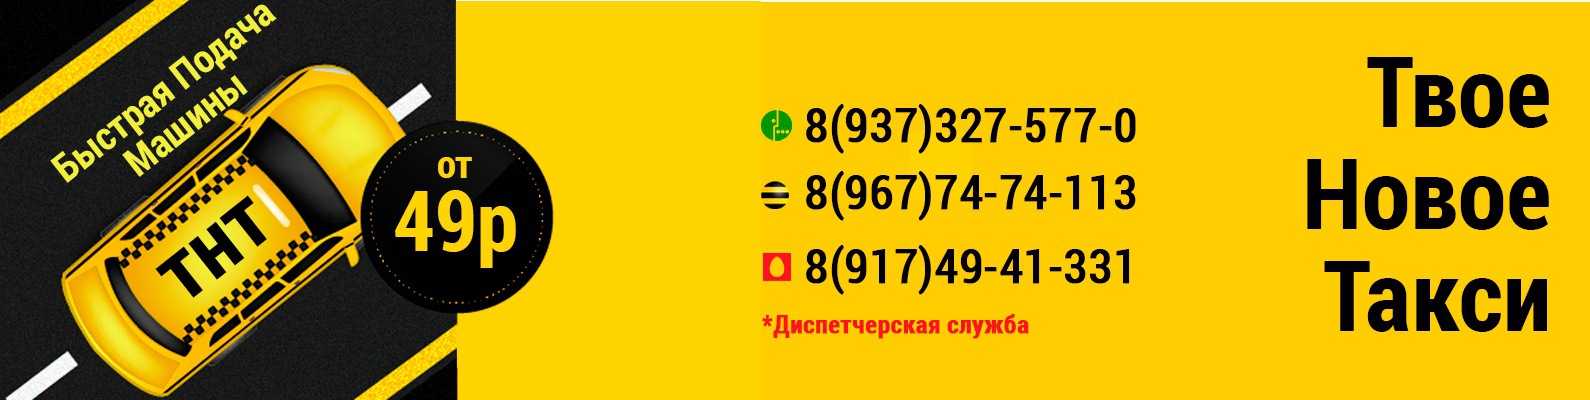 Номер телефона киргиз мияки. Номер такси ТНТ. Такси ТНТ Карталы. Такси ТНТ Мелеуз. Такси Киргиз Мияки номер.